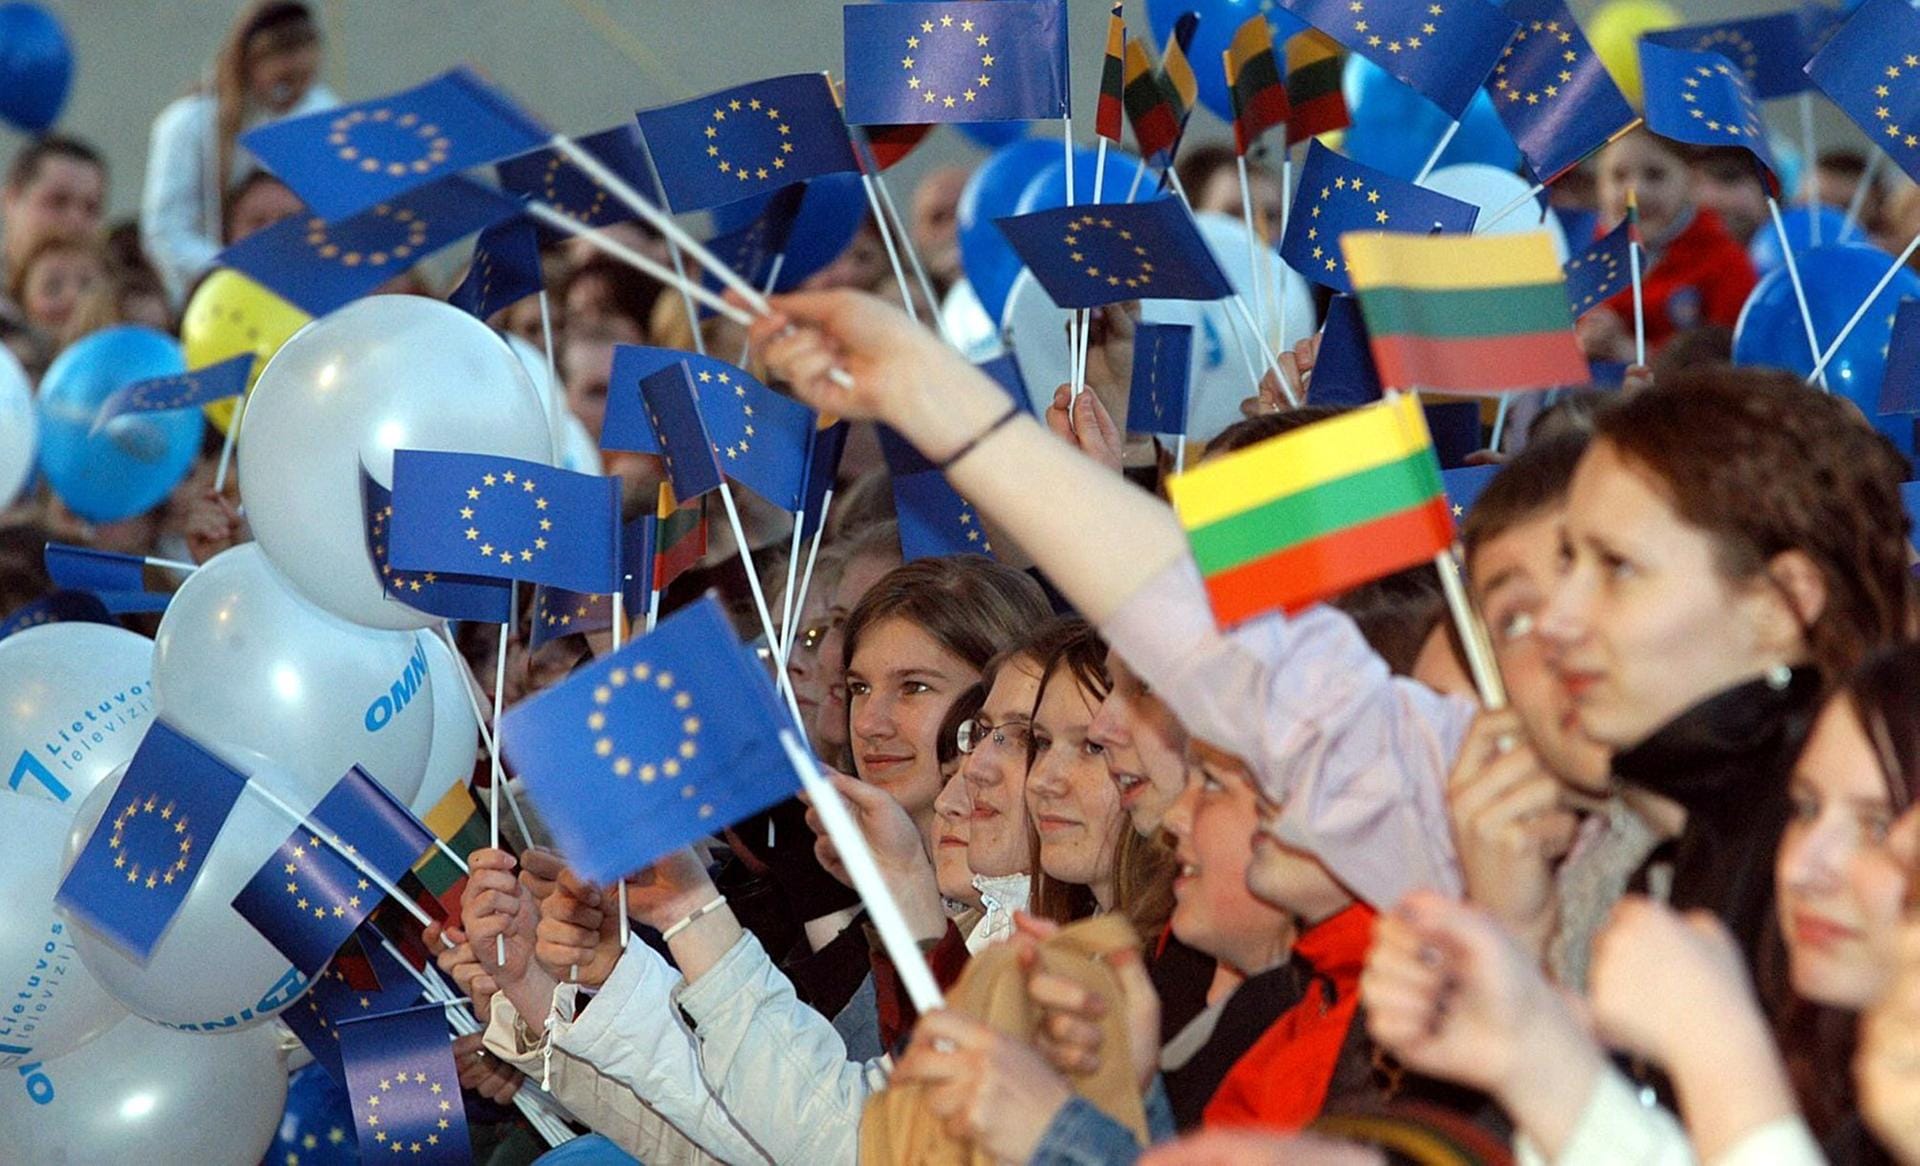 EU-Begeisterung auch in Litauen: In der Hauptstadt Vilnius feiern Jugendliche mit litauischen und Europafahnen bei einem Konzert während einer Feier zur EU-Erweiterung auf dem Kathedralenplatz.